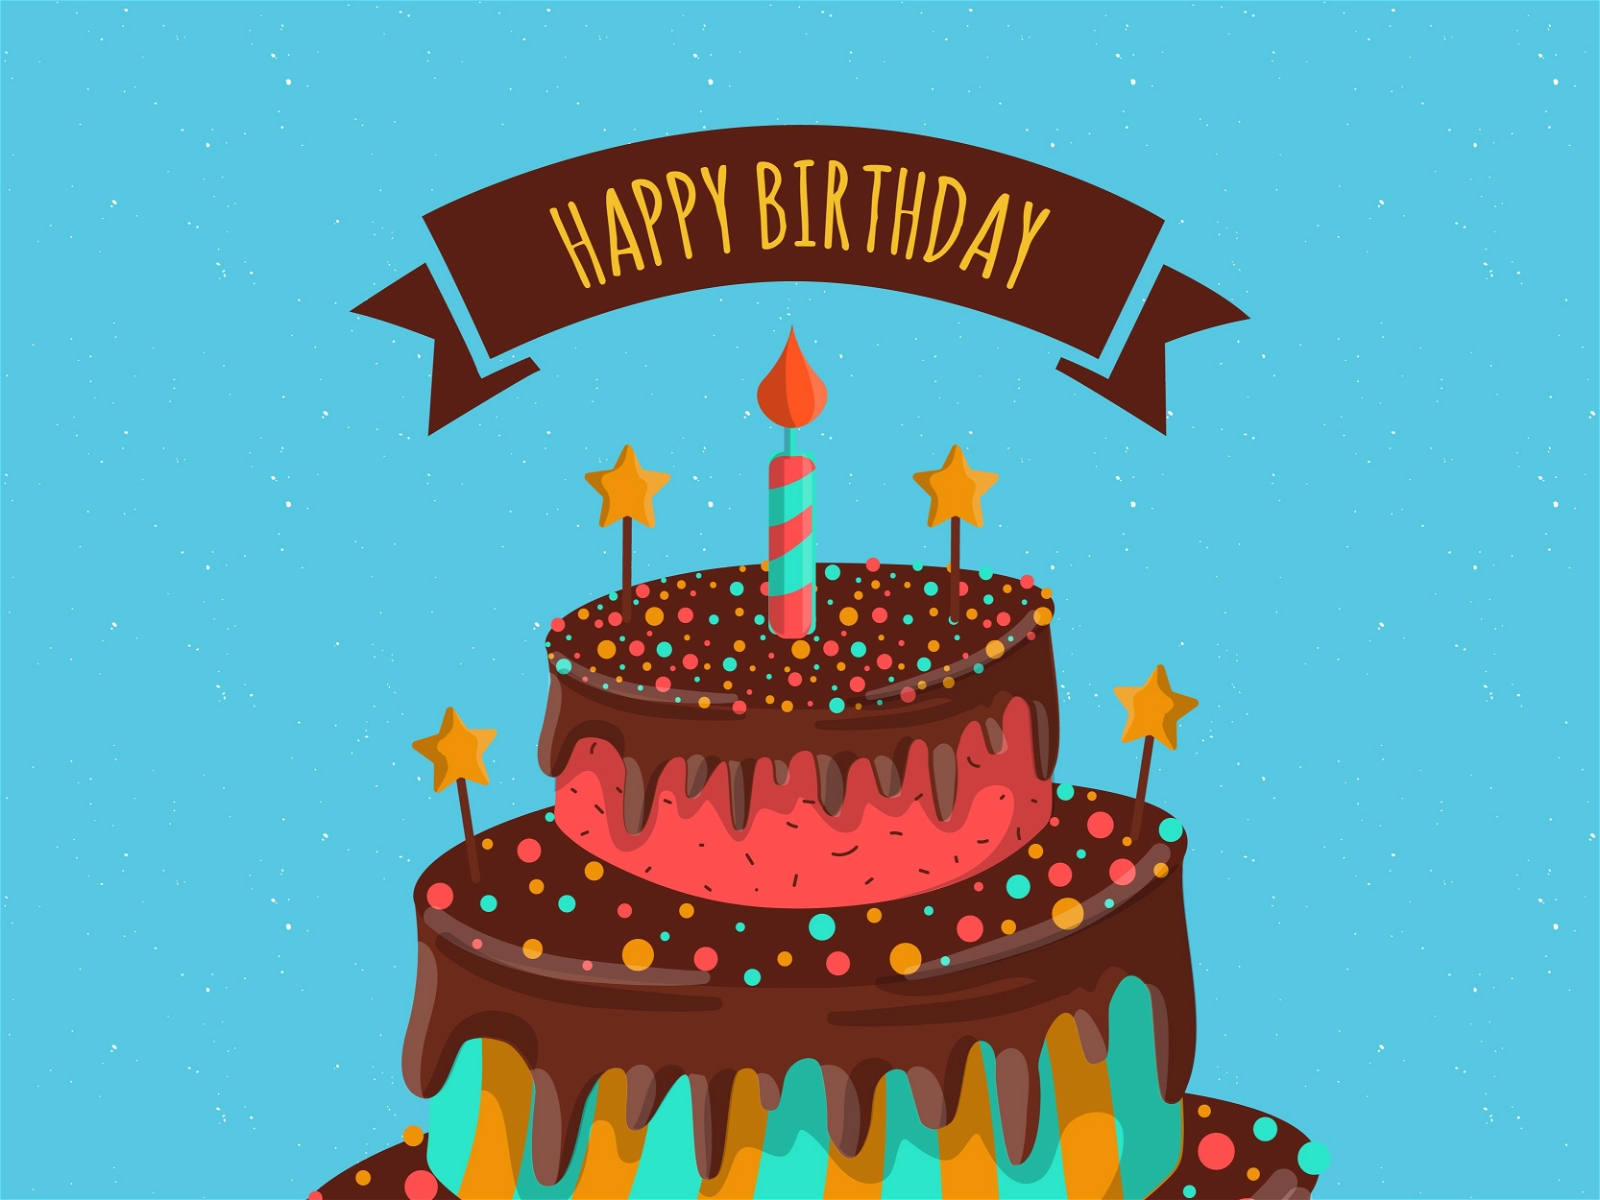 Cartão de feliz aniversário com bolo